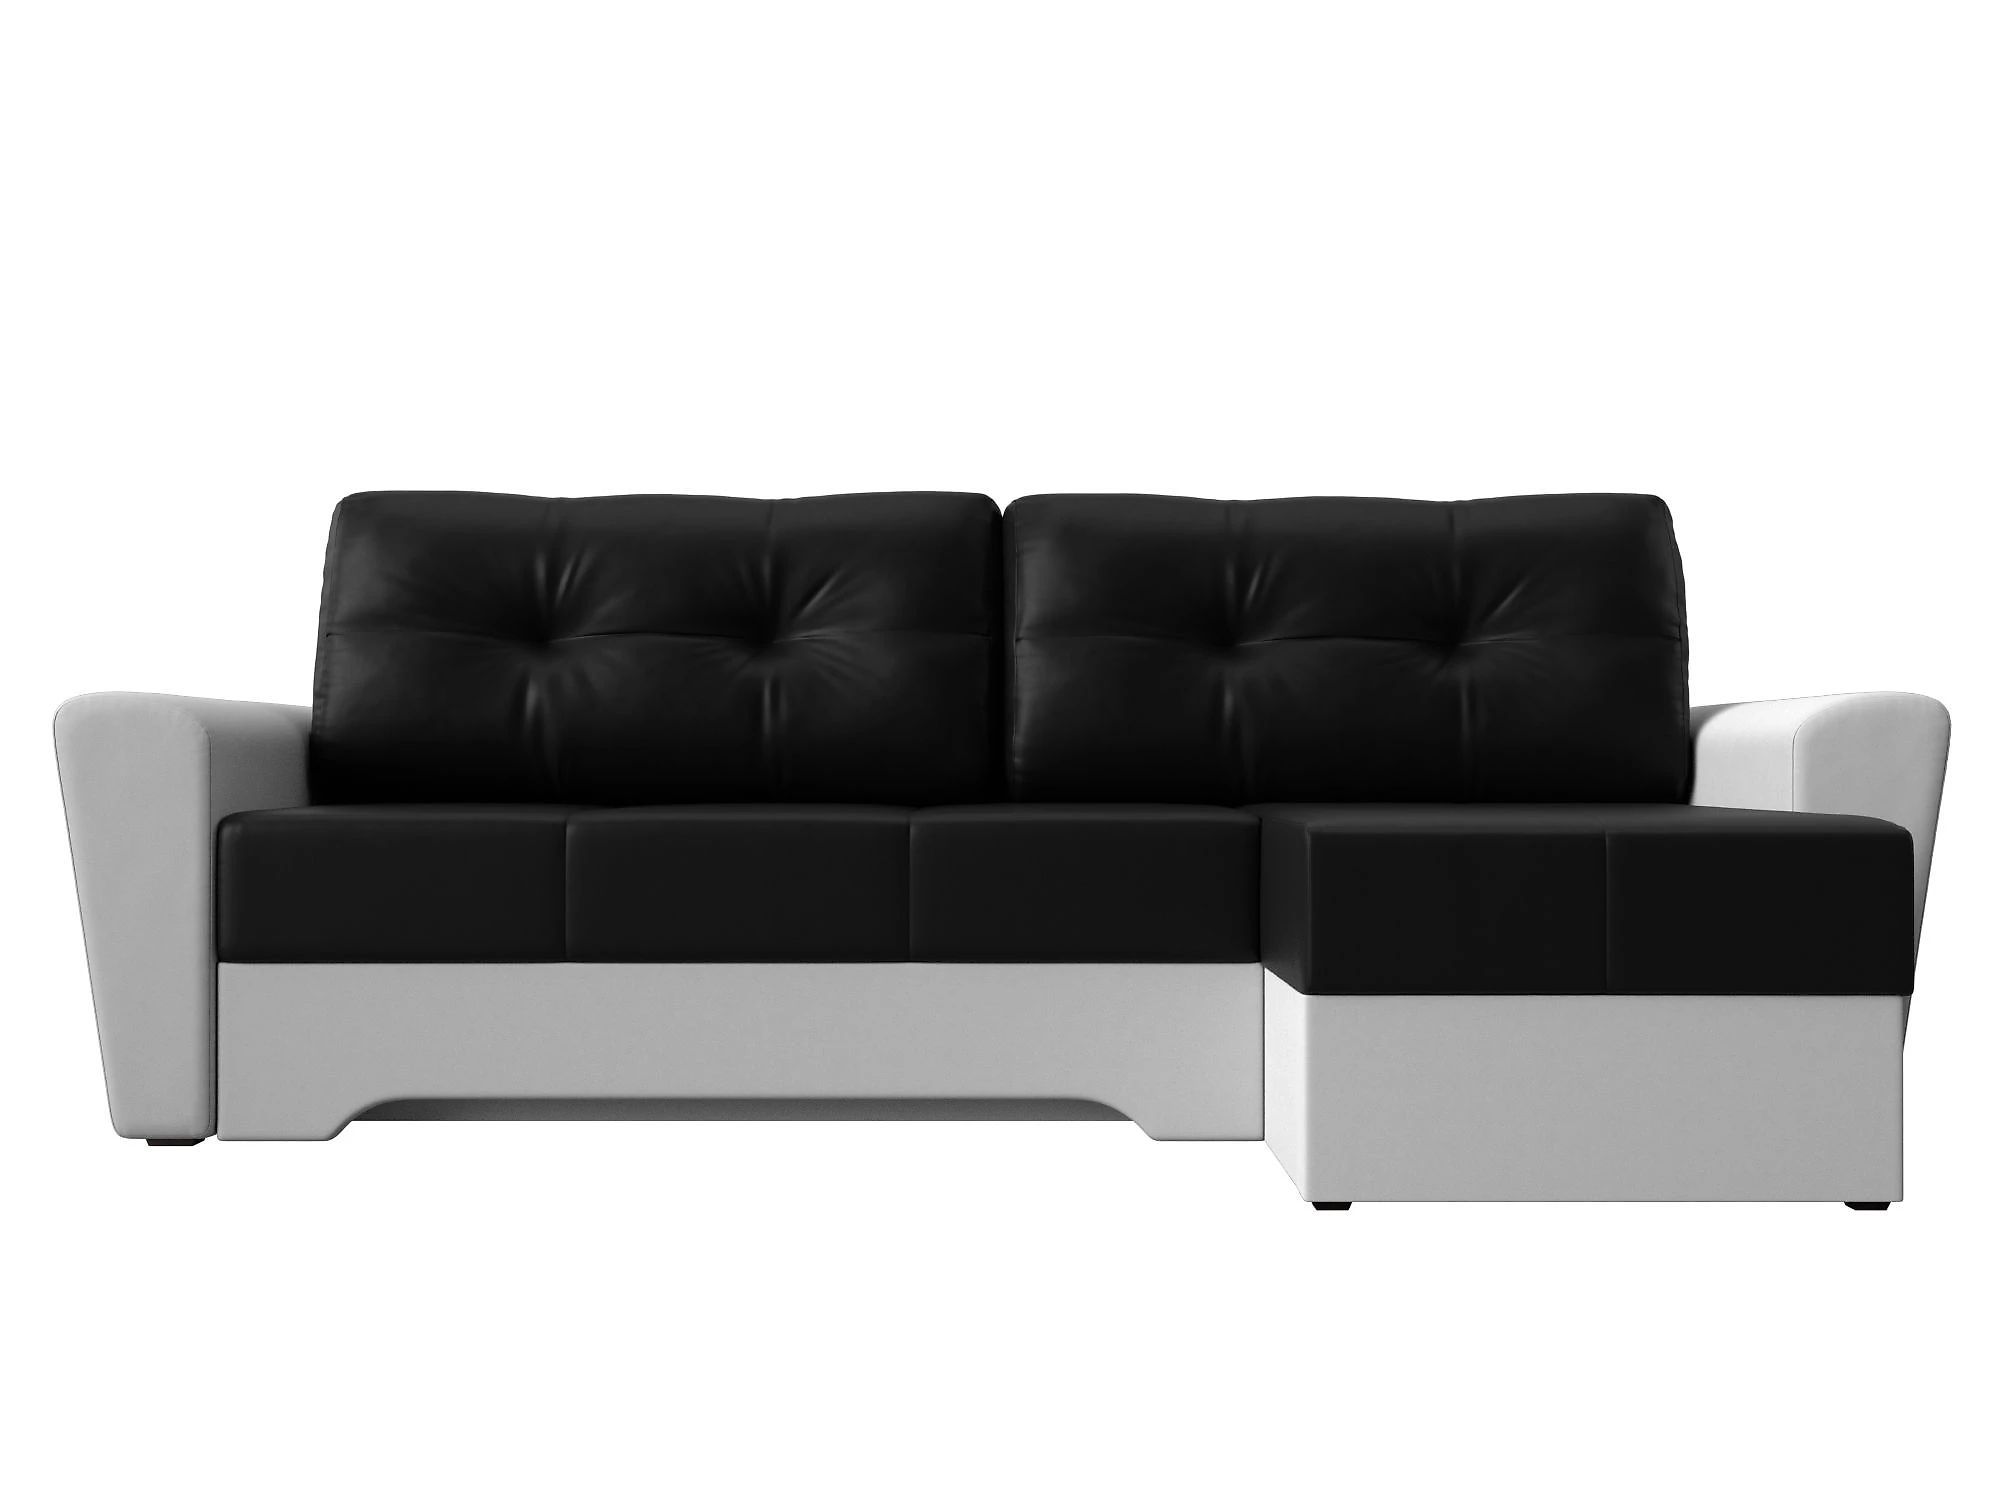  кожаный диван еврокнижка Амстердам Дизайн 48